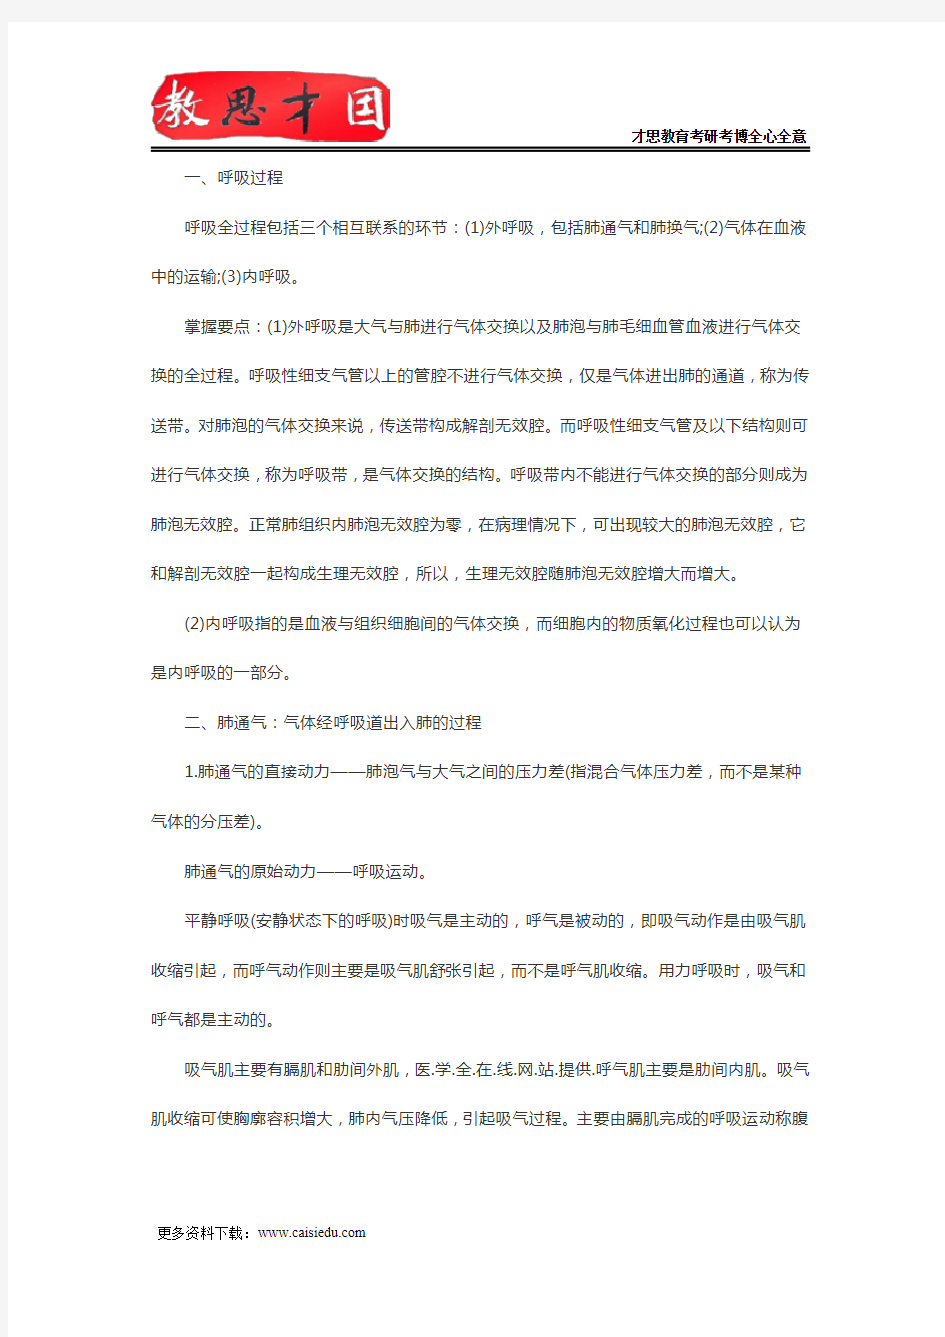 北京协和医学院306西医综合考研生理学复习笔记(九)